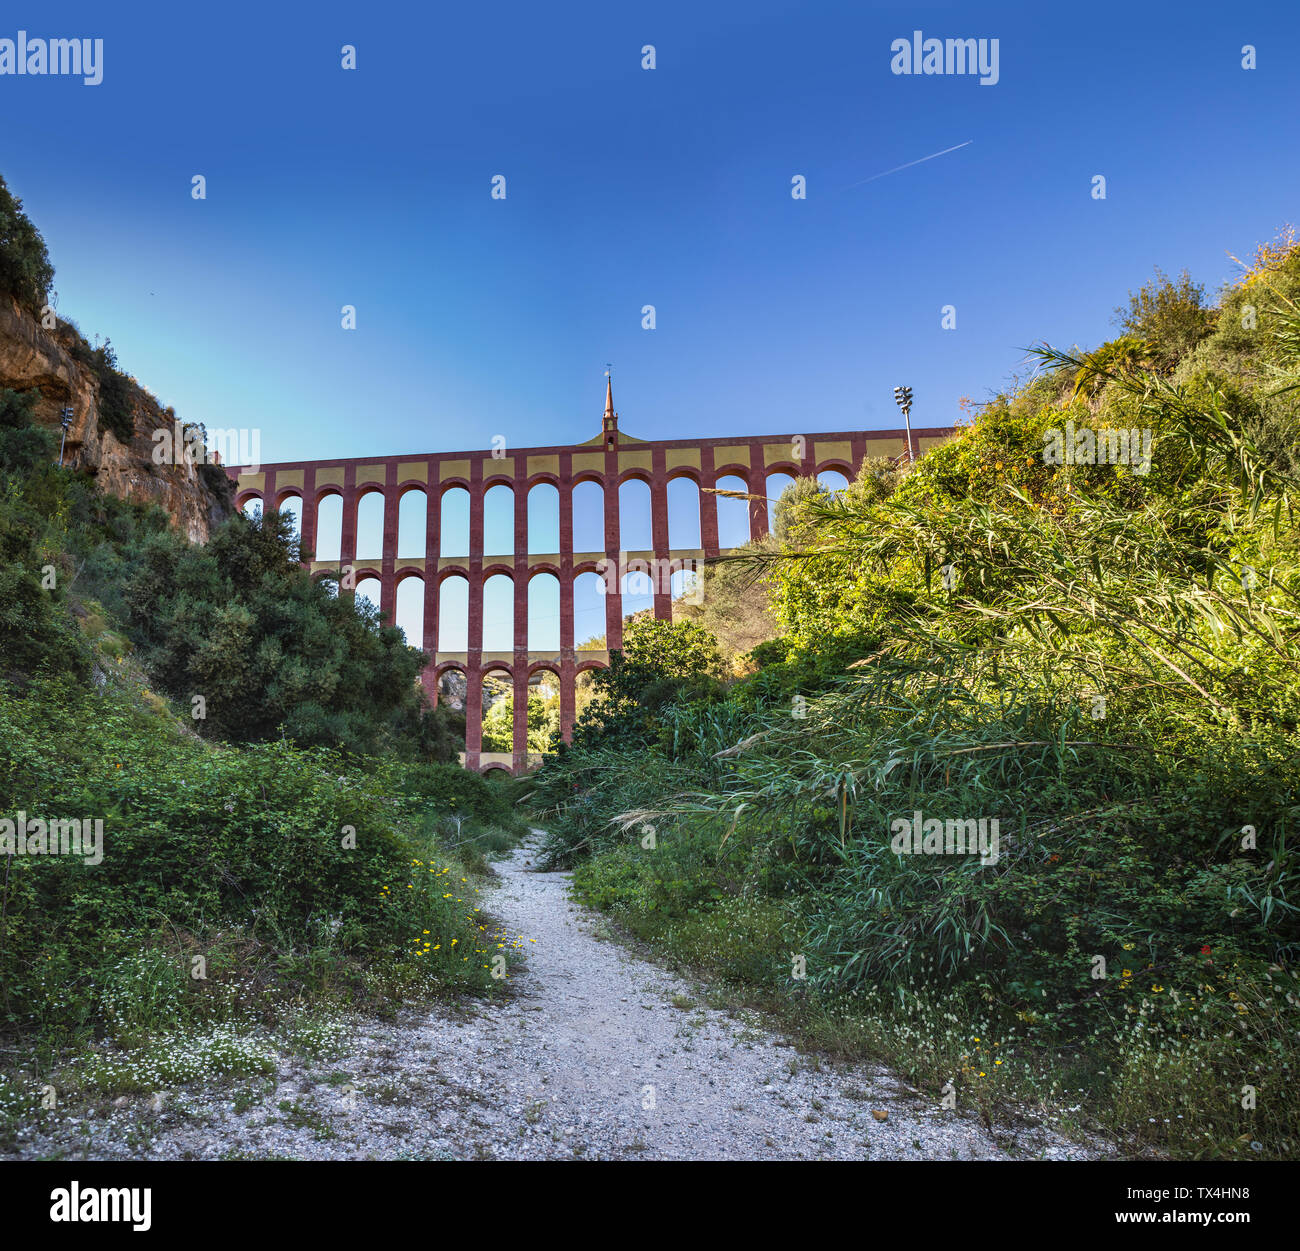 L'Aqueduc Eagle alias Acueducto Del Aguila dans Nerja sur la Costa del Sol en Andalousie, Espagne Banque D'Images